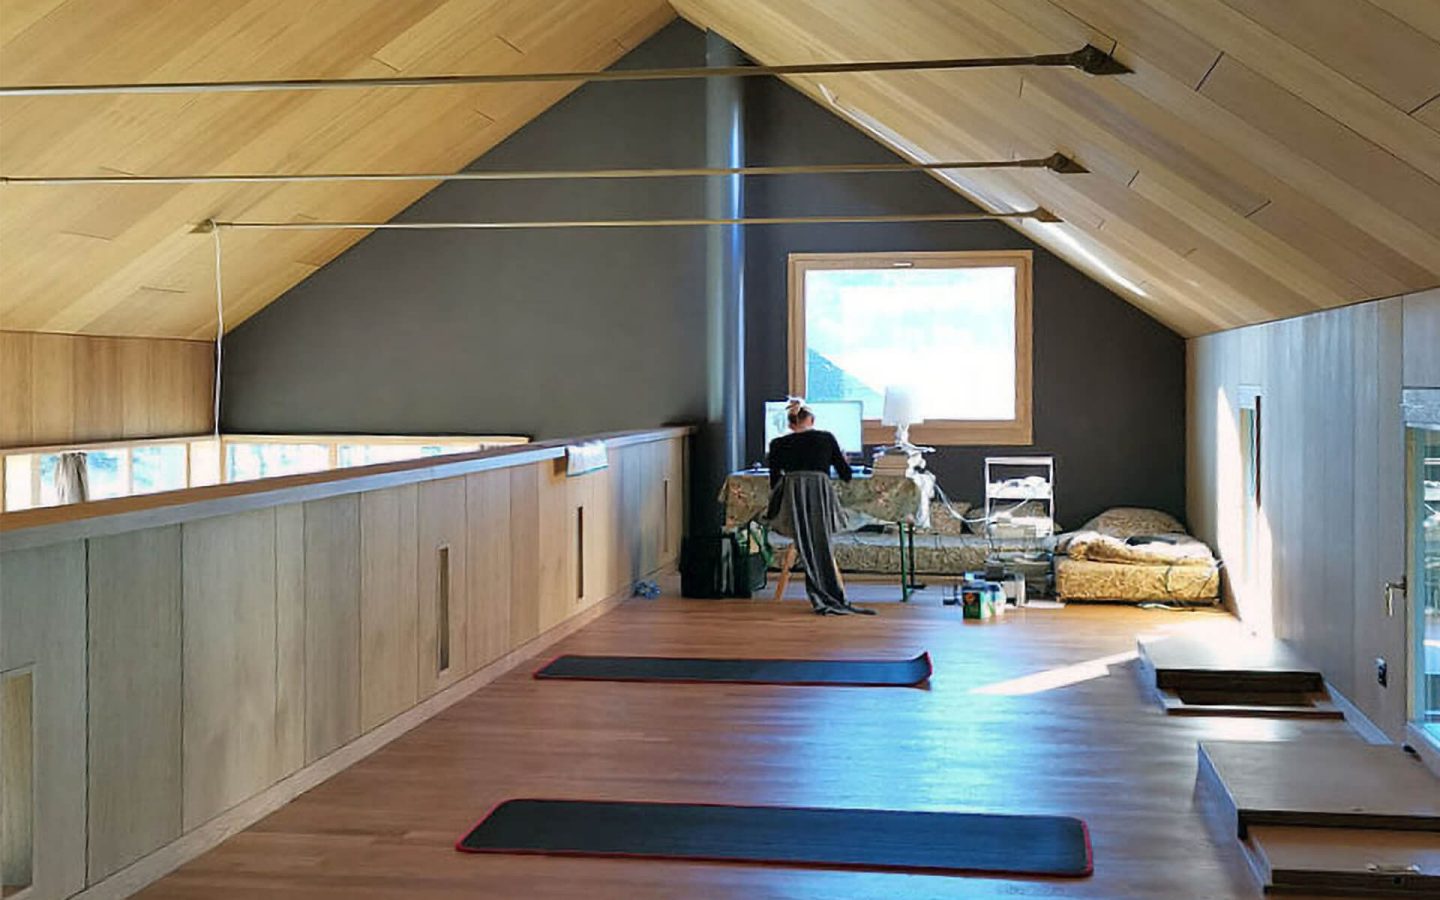 Unter dem Dach befindet sich ein offener, flexibel nutzbarer Raum.